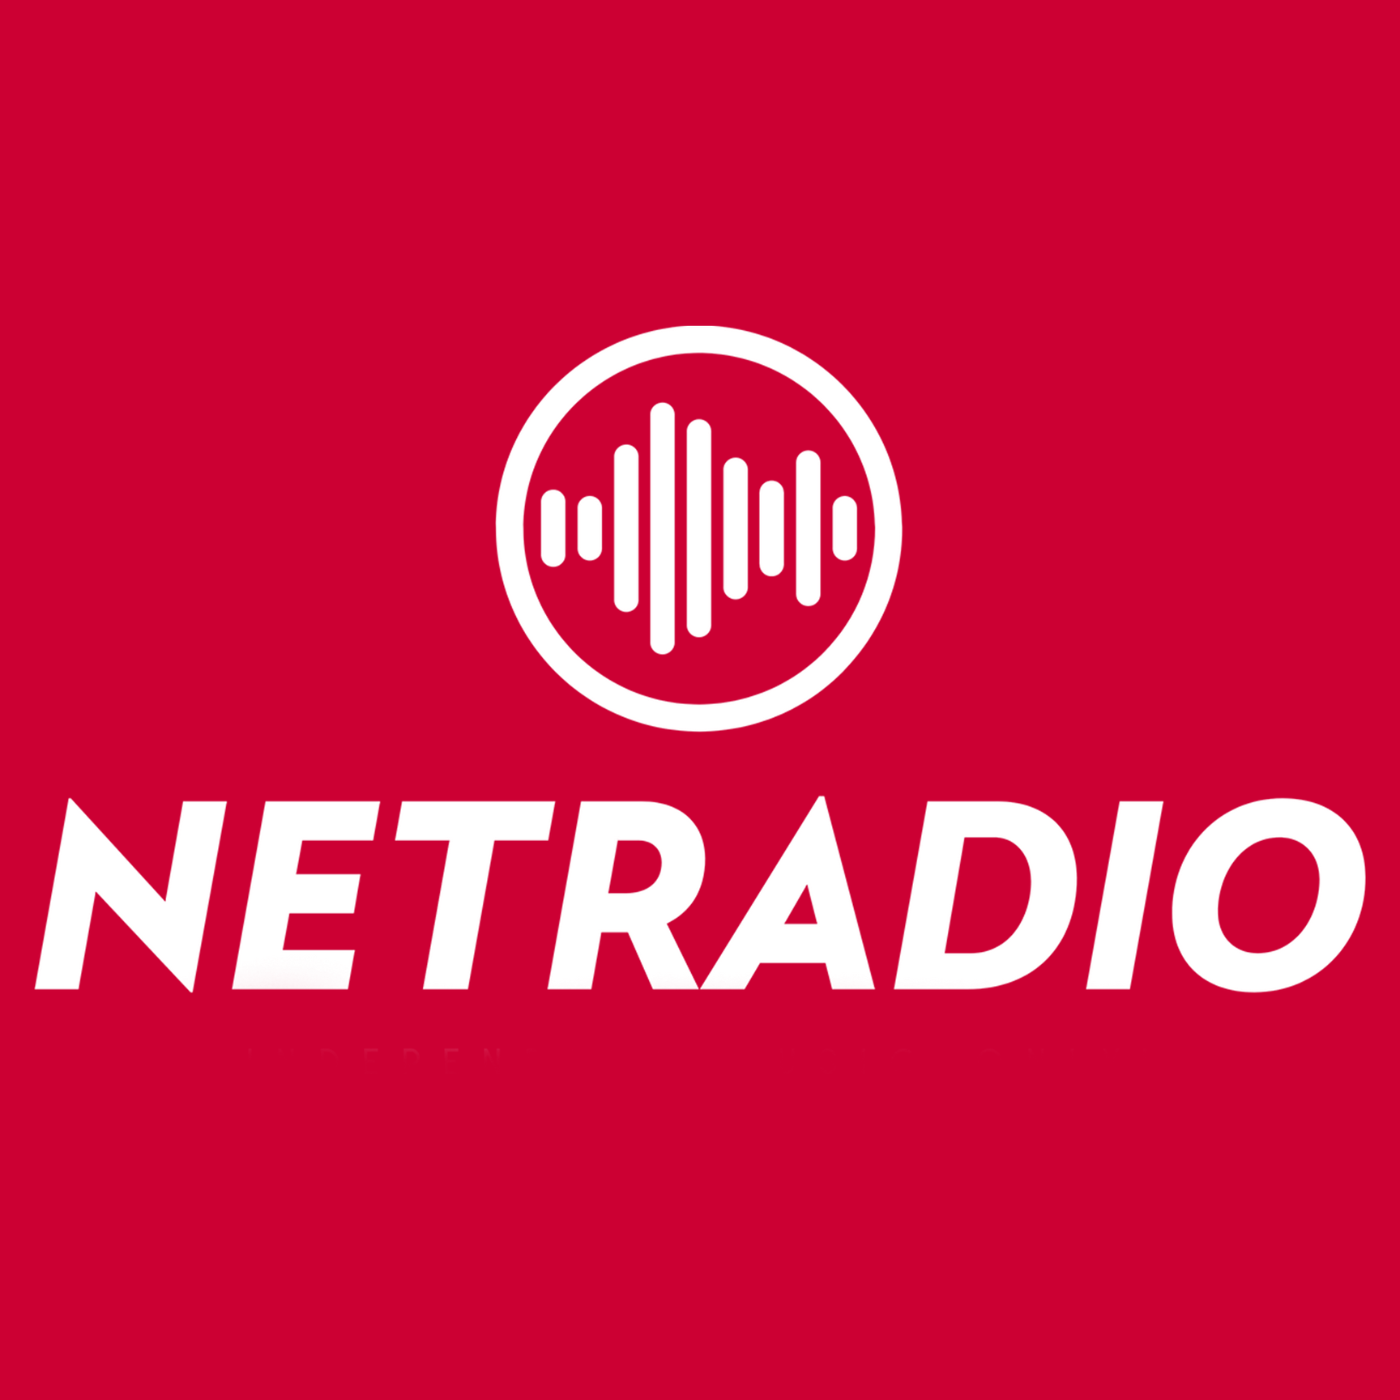 NETRADIO fête ses 25 ans et démarre en DAB+ à Genève/ Annemasse et Neuchâtel